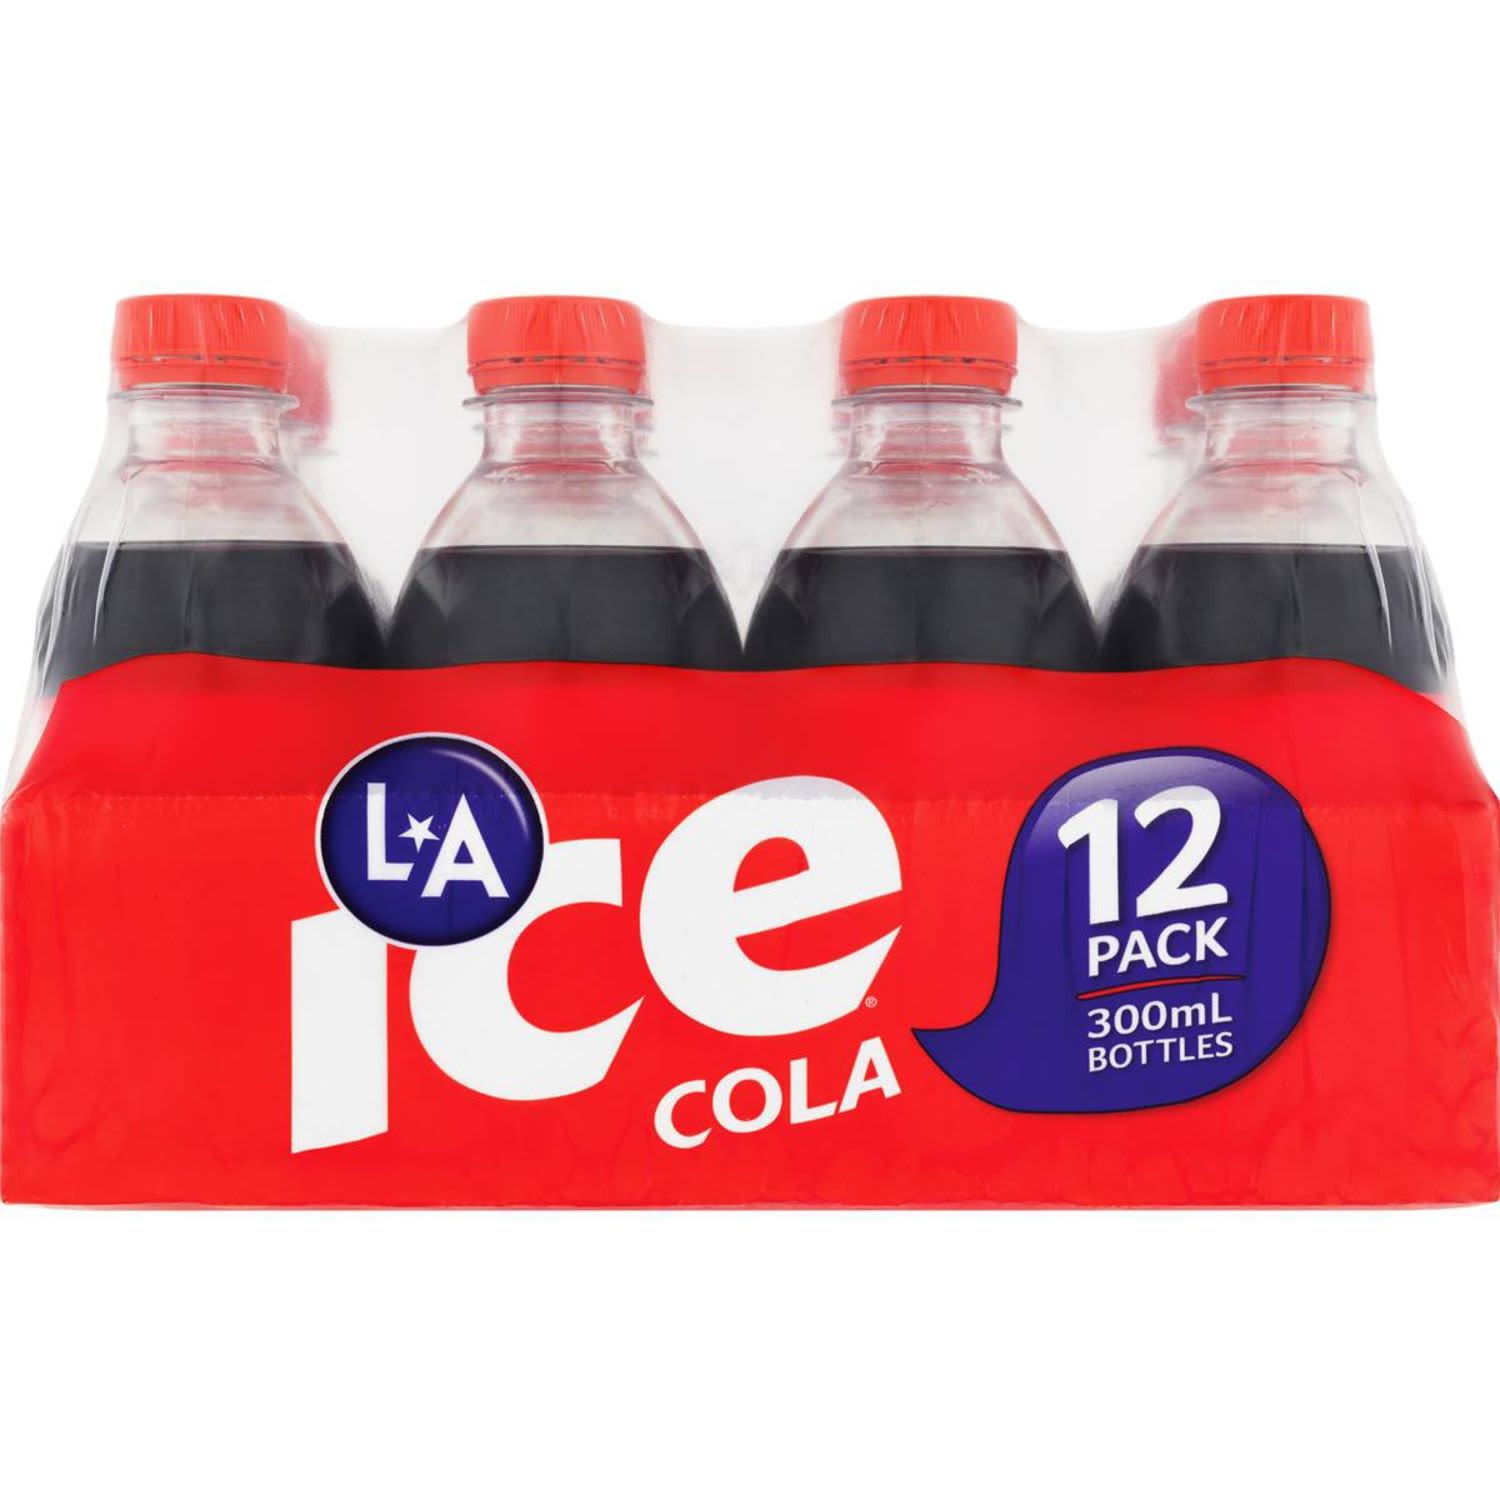 La Ice Cola Bottle Bottles, 12 Each